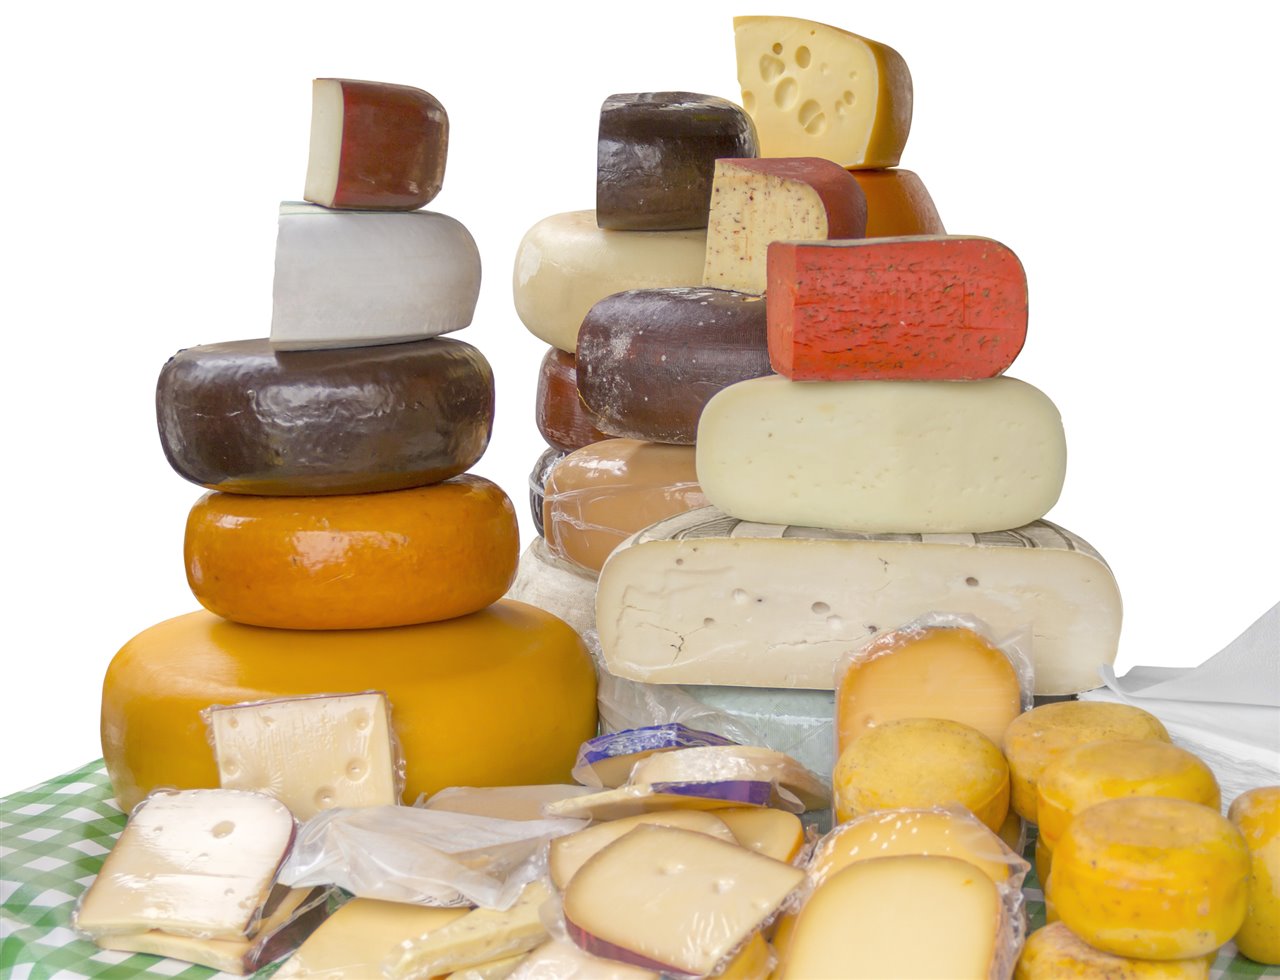 Los científicos investigarán más tipos de queso además del emmental